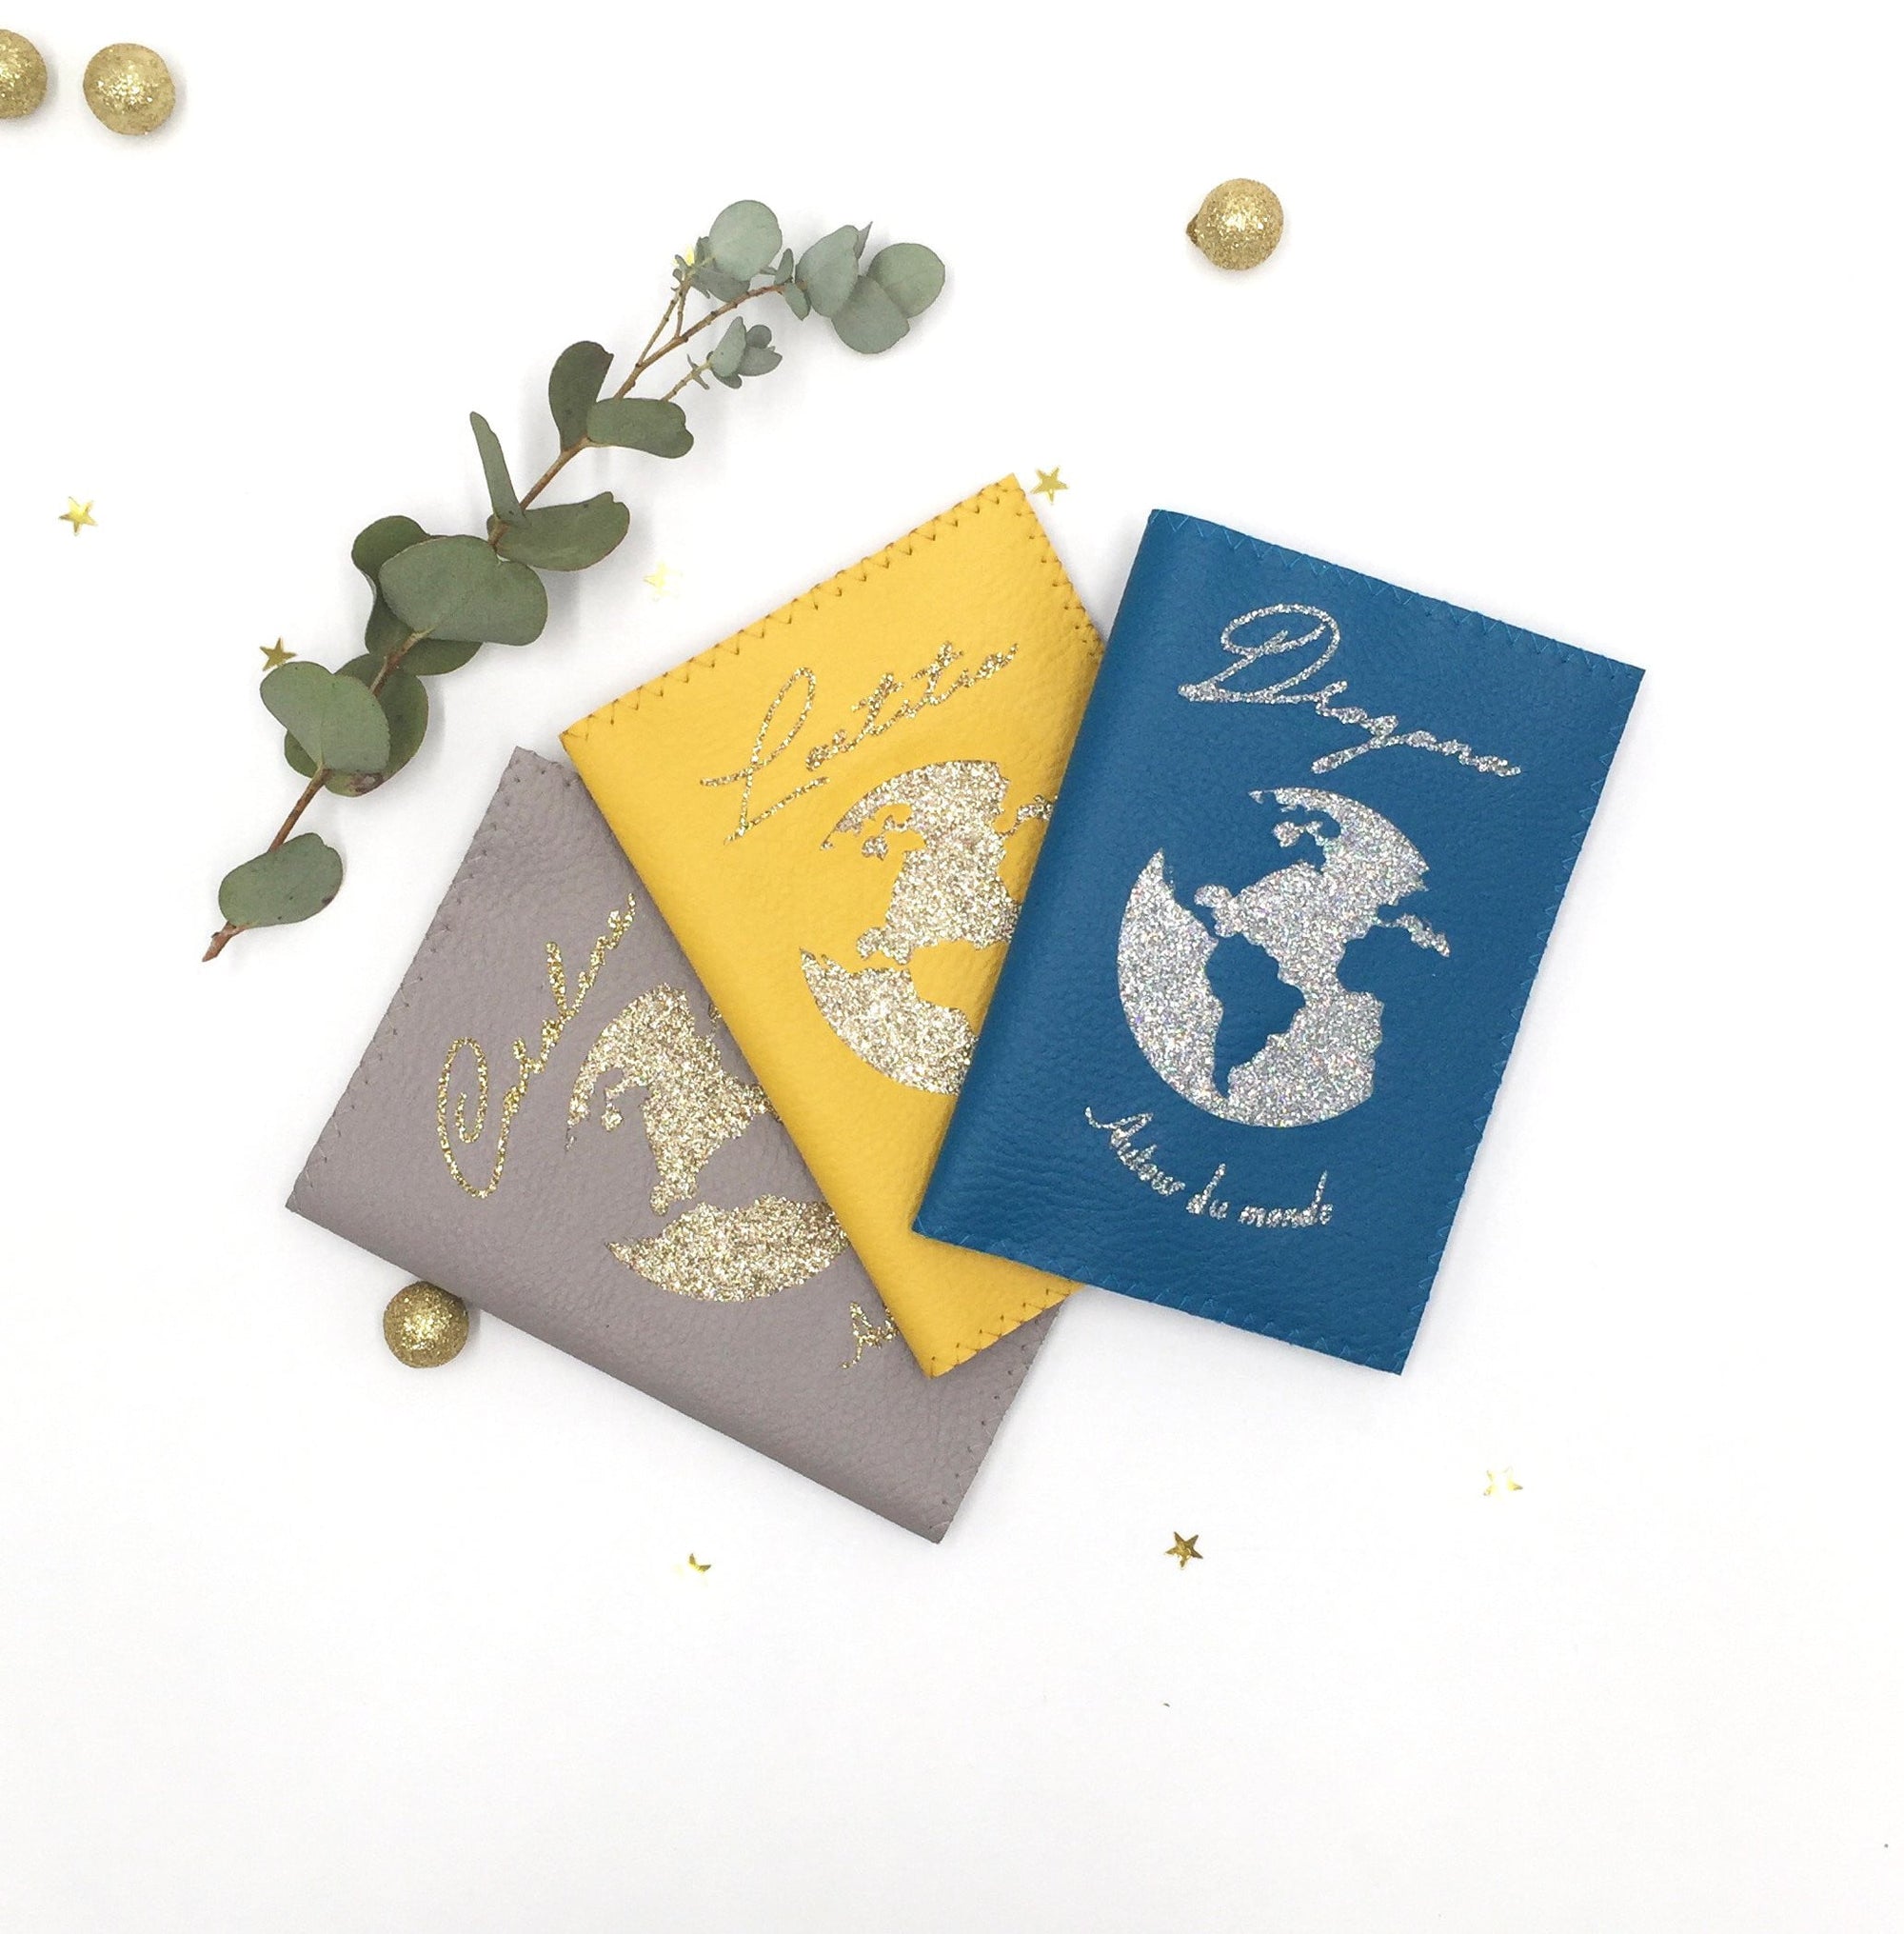 Protège passeport personnalisé Map Monde canard, moutarde ou taupe - Crapaud Chou, le cadeau de naissance original et personnalisé